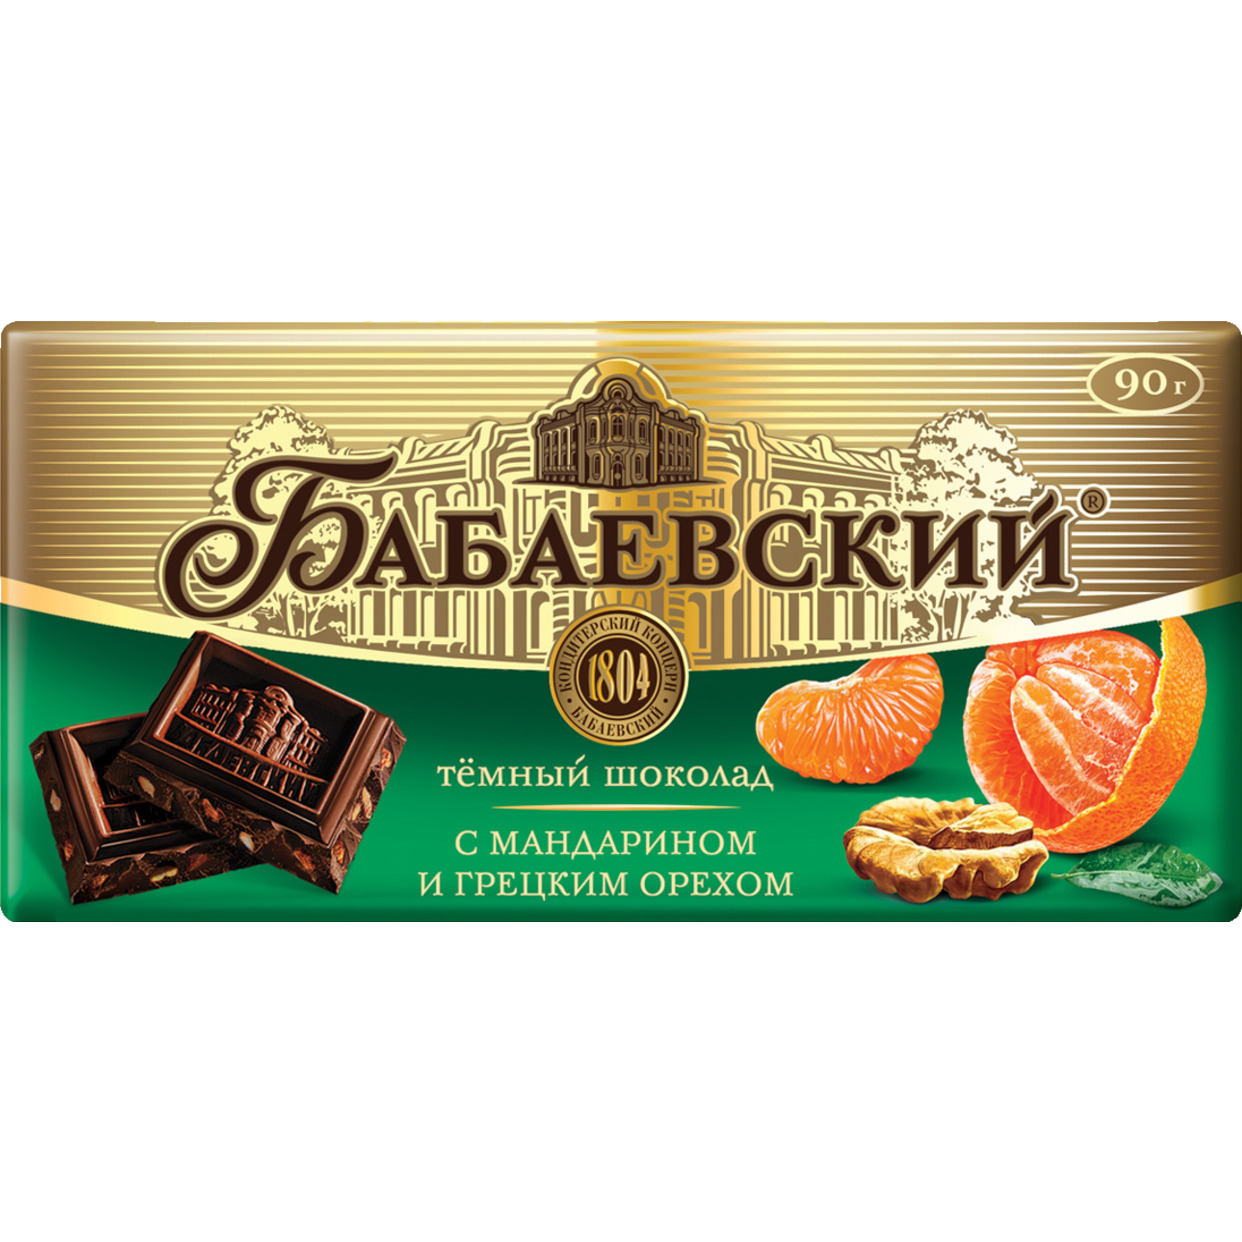 Шоколад Бабаевский с мандарином и грецким орехом, 90 г